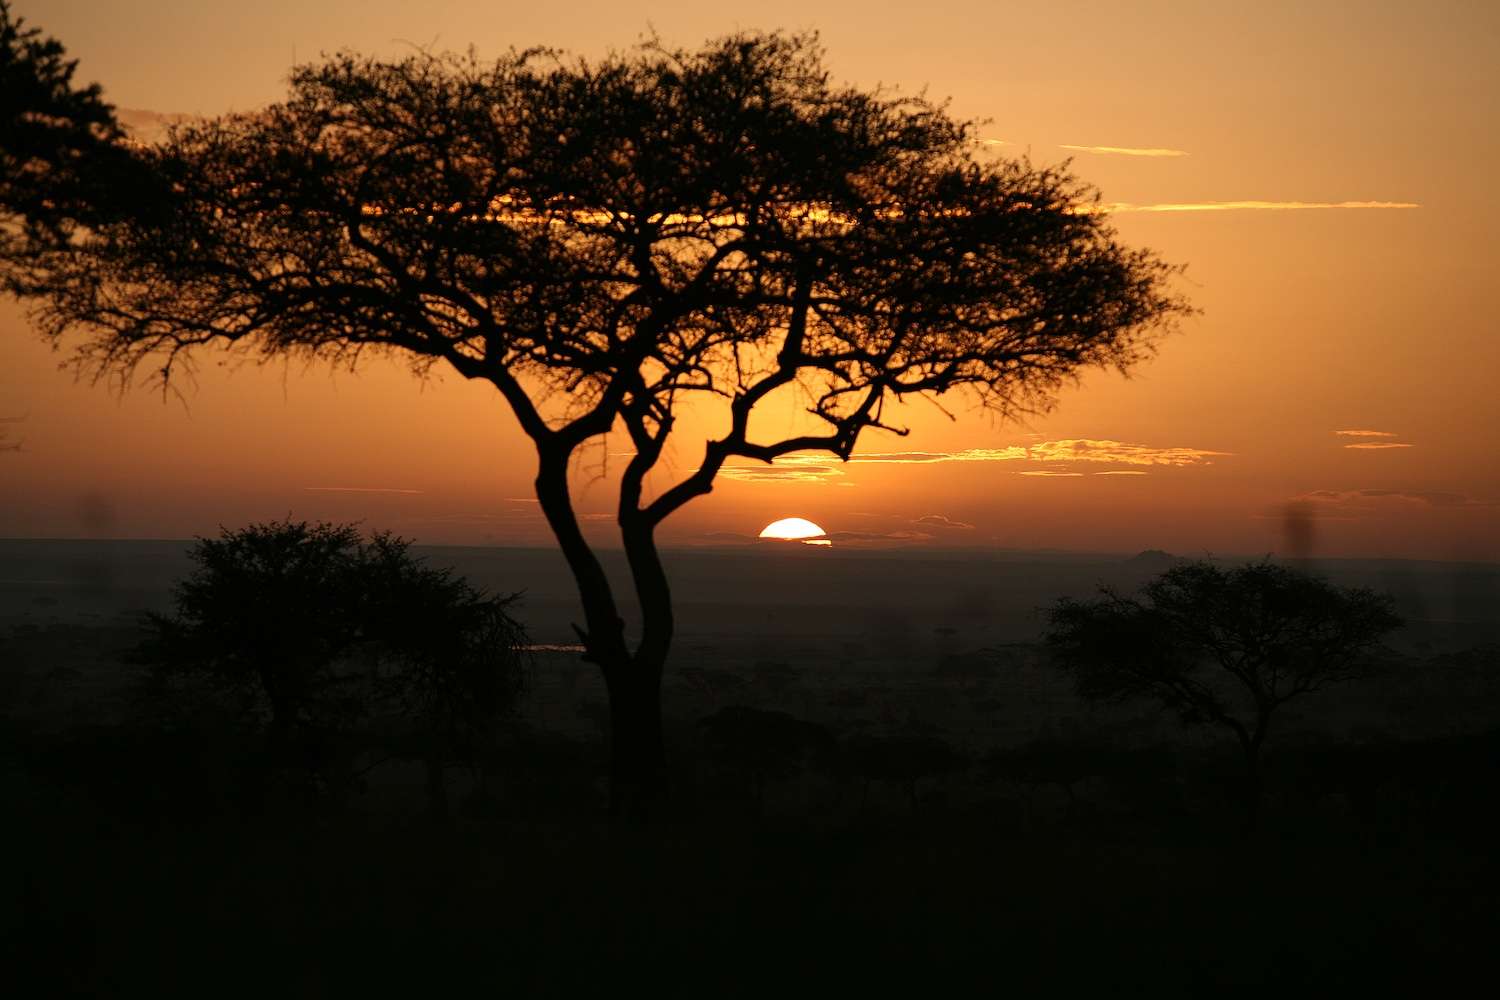 A beautiful sunset in Tanzania.